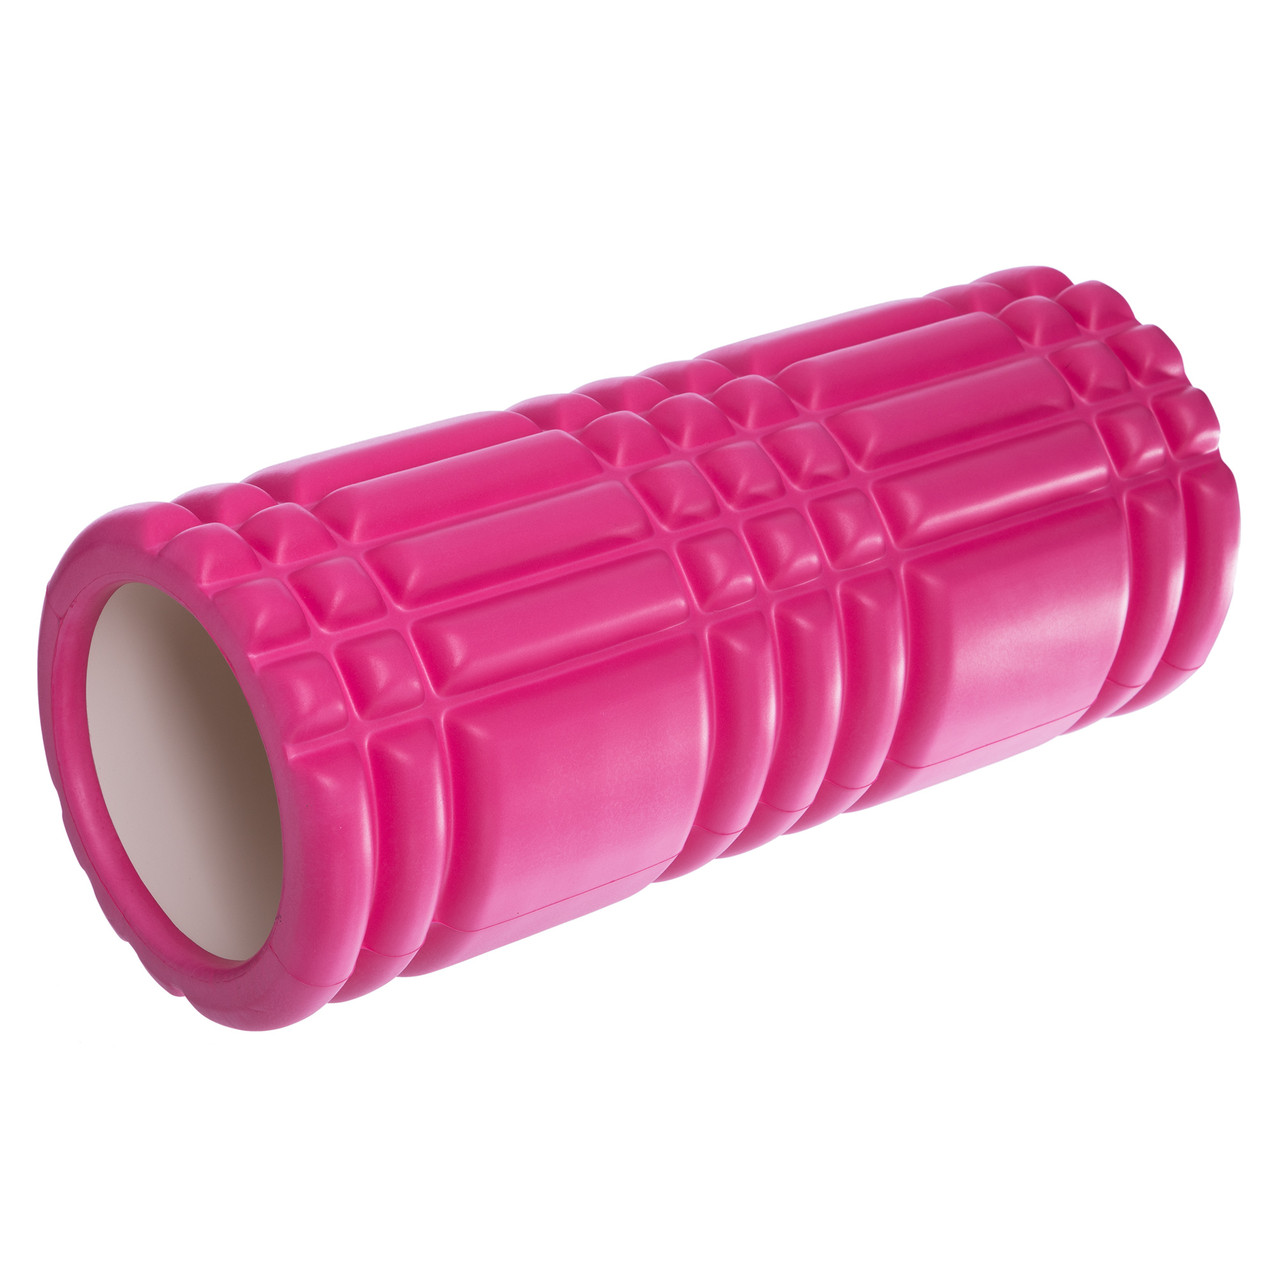 Ролик масажний для йоги, пілатесу, фітнесу Grid 3D Roller FI-6277 рожевий